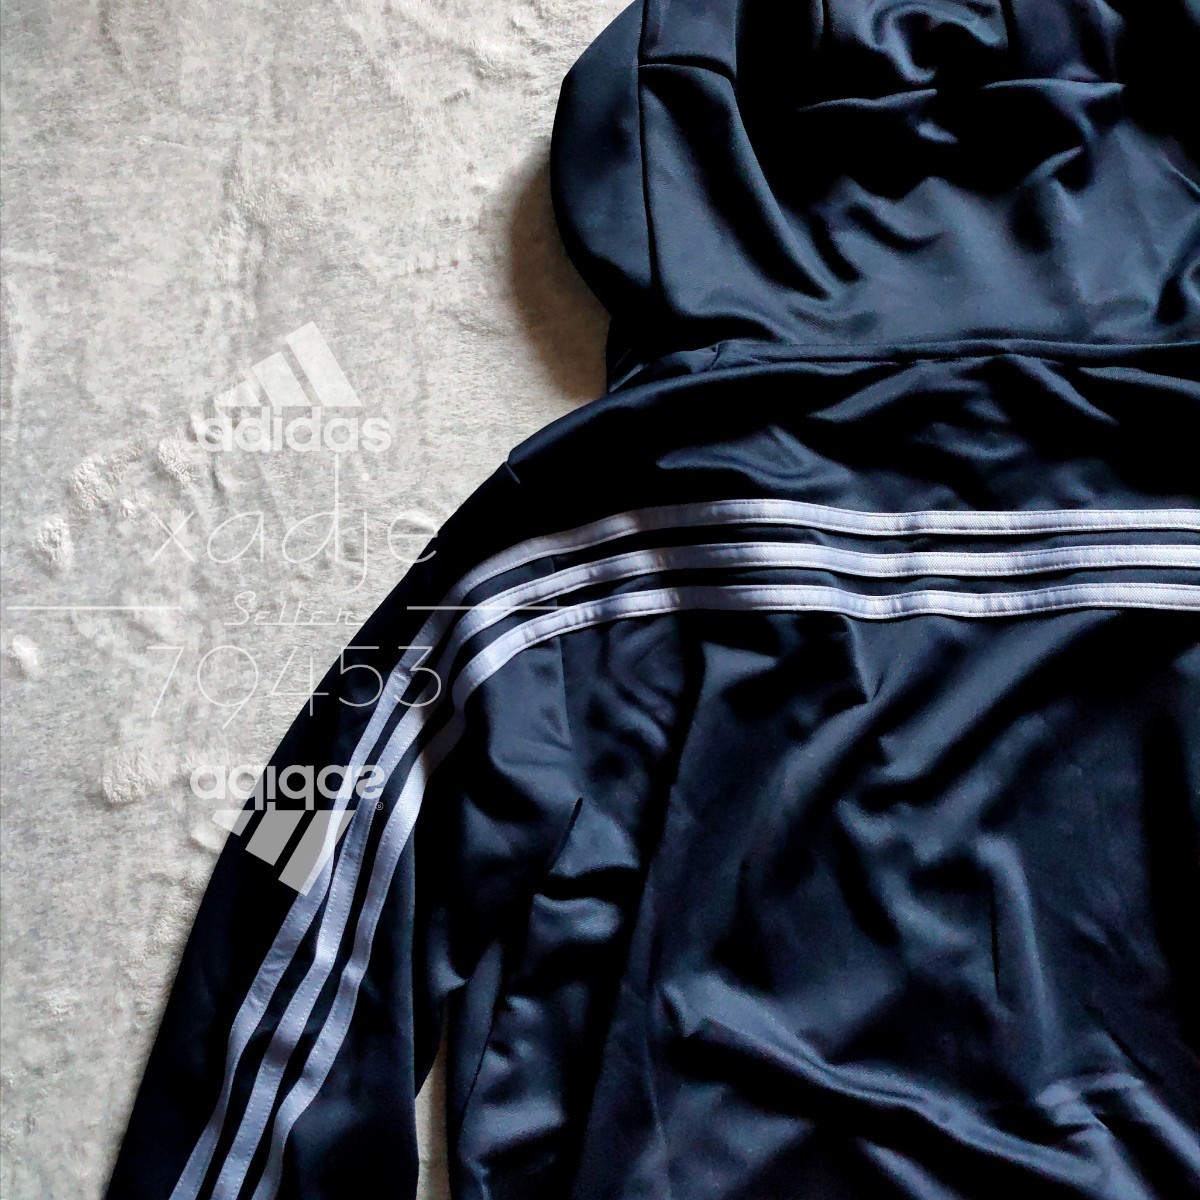 新品 正規品 adidas アディダス 上下セット セットアップ パーカー ジャージ パンツ 紺 ネイビー 三本ライン ロゴ プリント XL_画像2